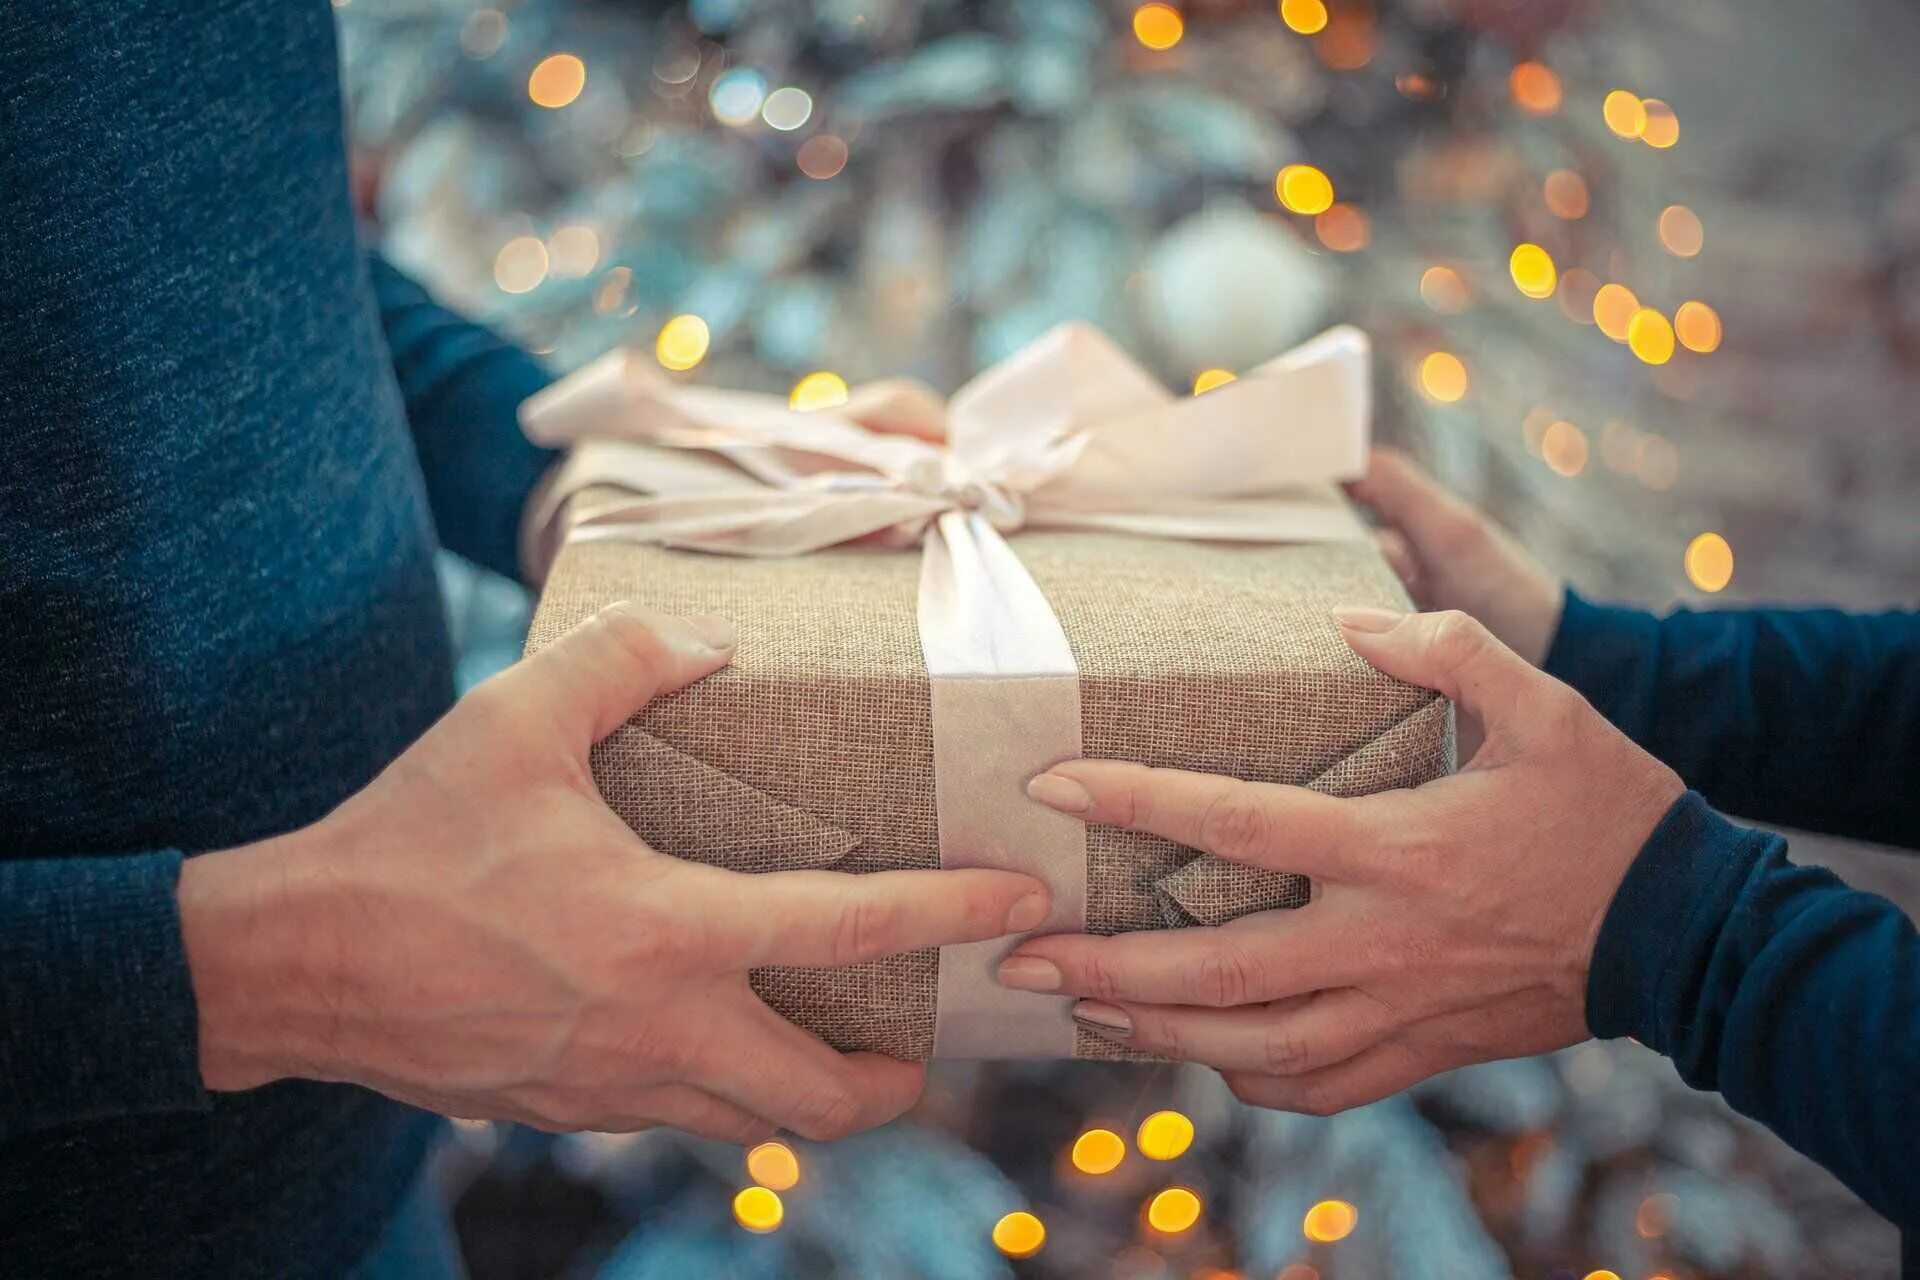 Сколько подарков можно дарить. Подарок в руках. Дарим подарки. Подорки в руках. Человек дарит подарок другому.